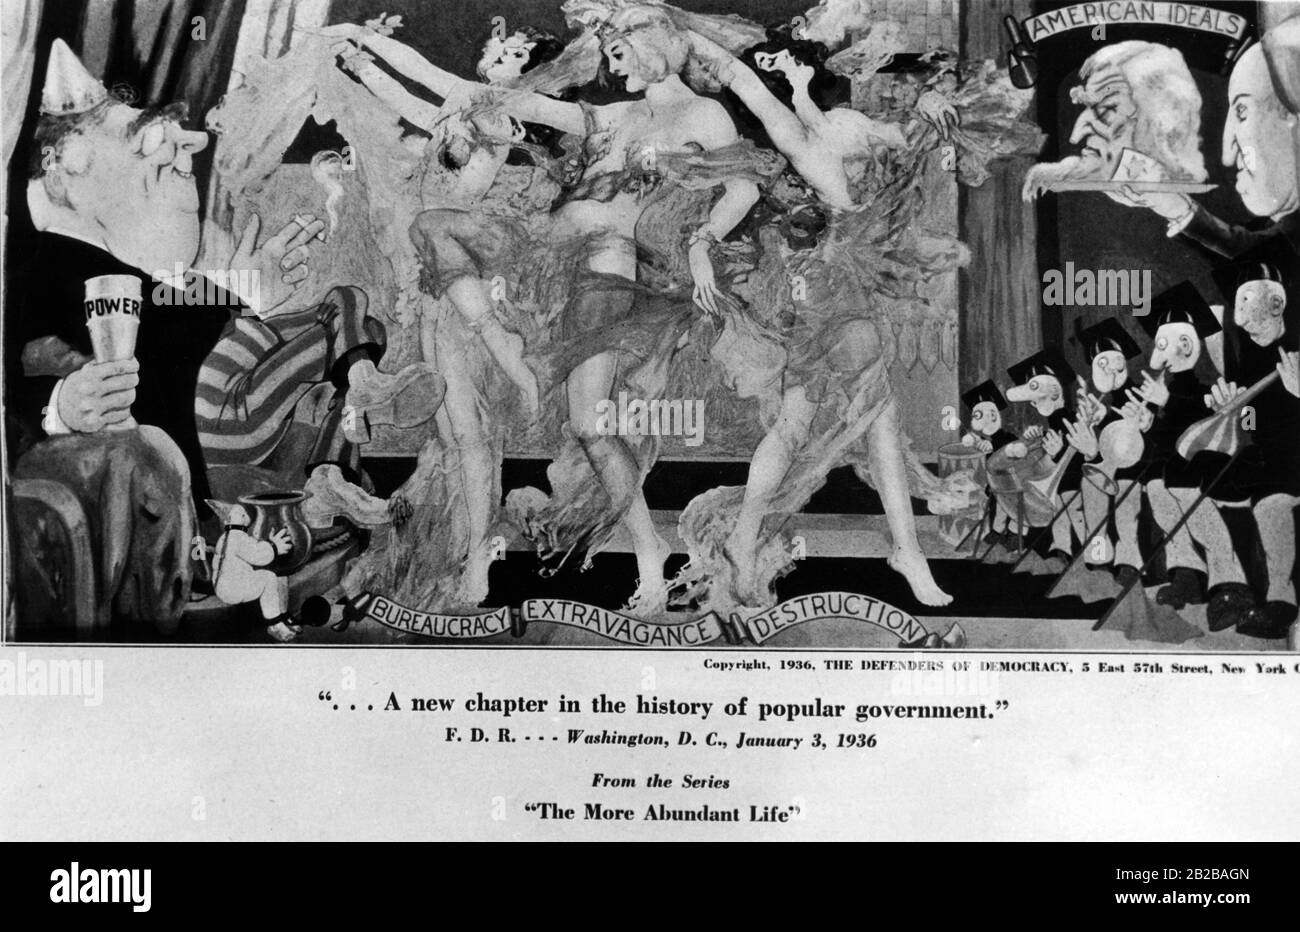 New Deal: Dessin animé par "Les défenseurs de la démocratie" à New York montrant une image de la série "La vie abondante" intitulée: "Un nouveau chapitre dans l'histoire du gouvernement populaire". Banque D'Images